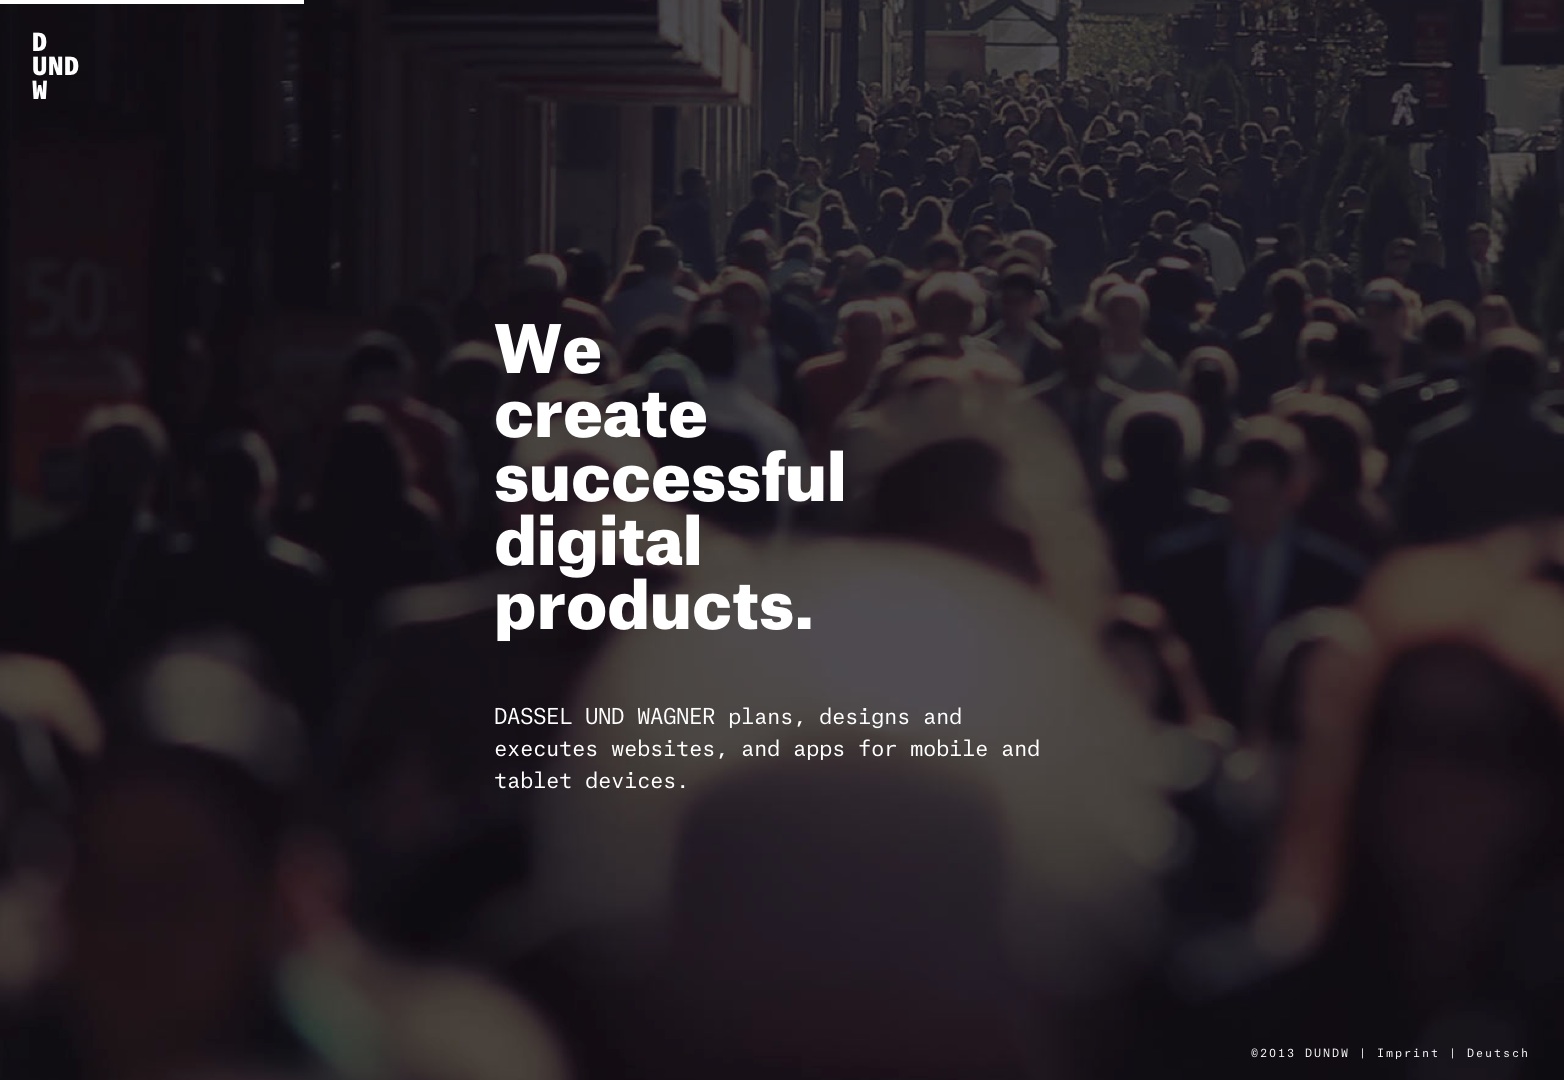 DASSEL UND WAGNER | We create digital products.